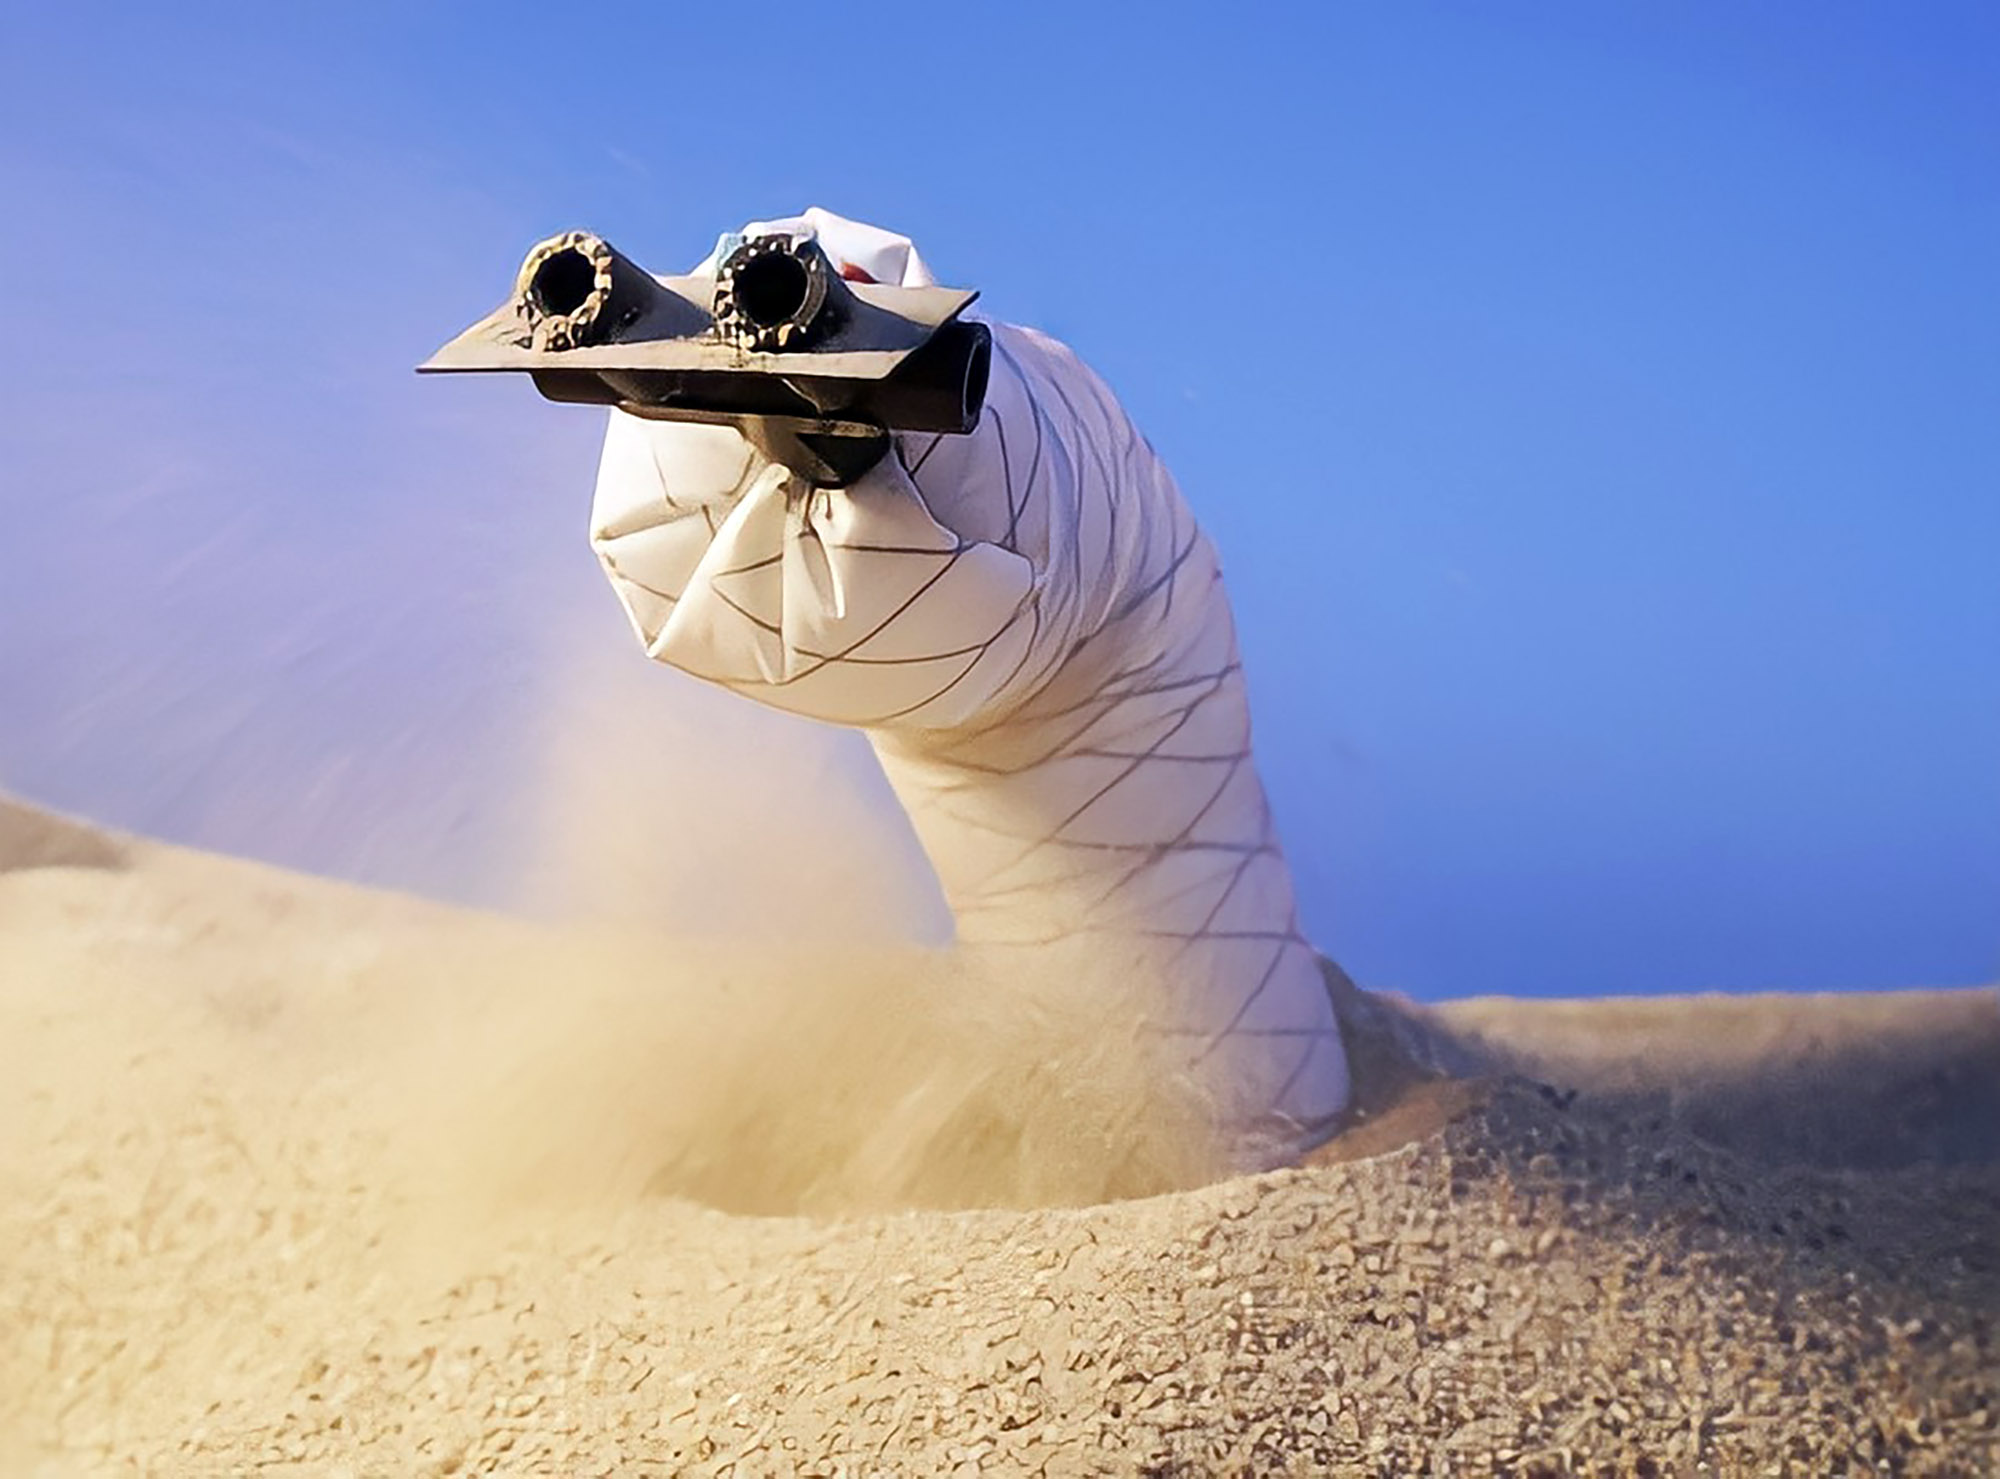 Roboworm Desert Craw Worm